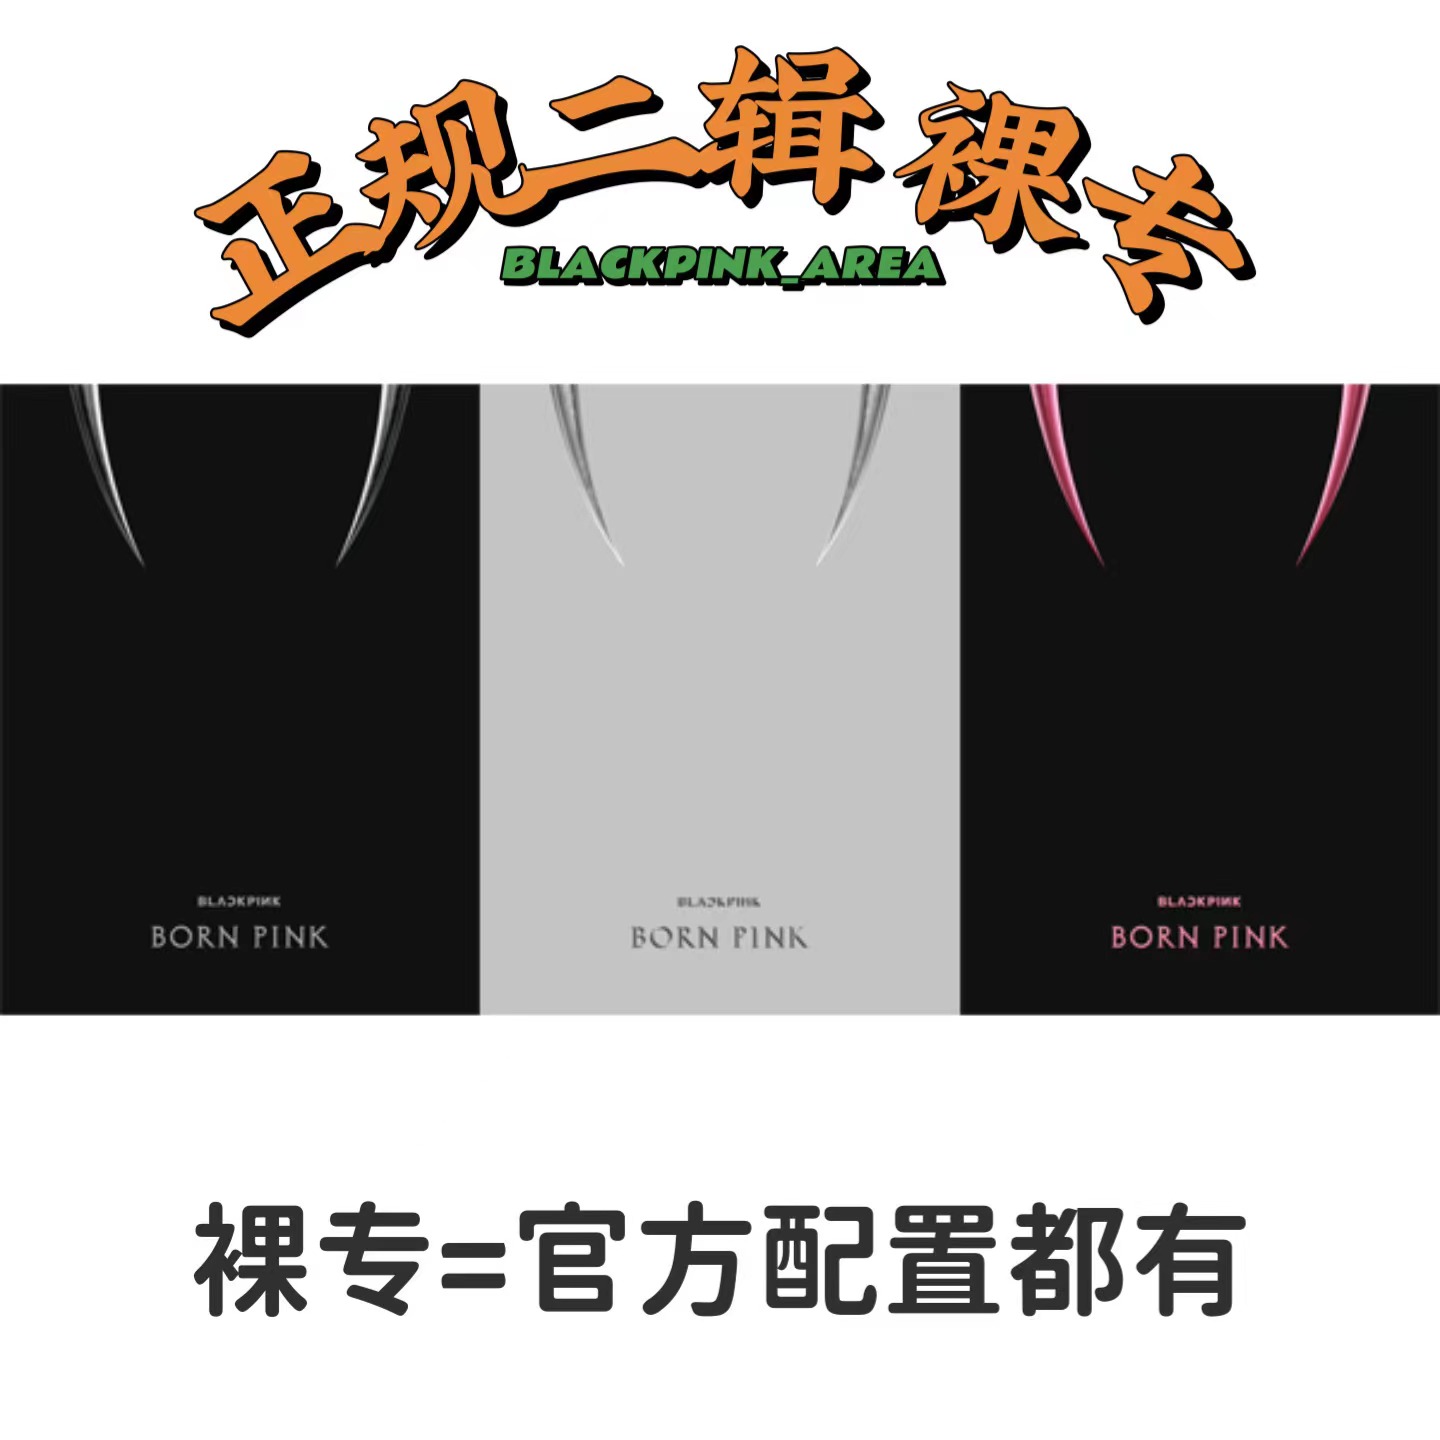 [补款 裸专][Ktown4u 独家特典] BLACKPINK - 2nd ALBUM [BORN PINK] BOX SET_BLACKPINK吧官博